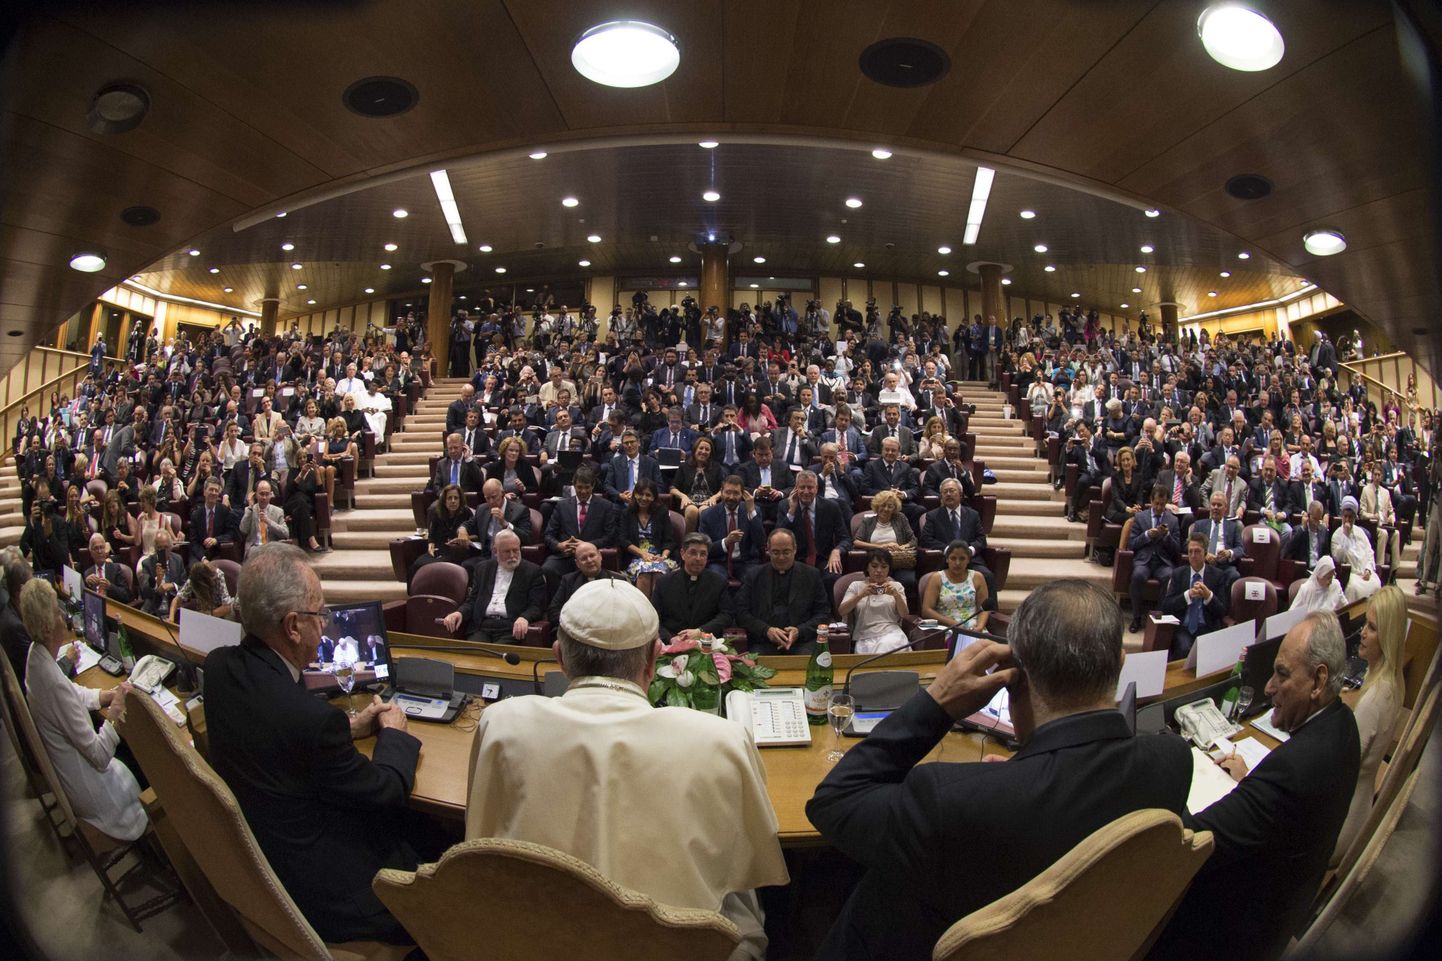 Keskkonna- ja orjuseteemaline konverents Vatikanis